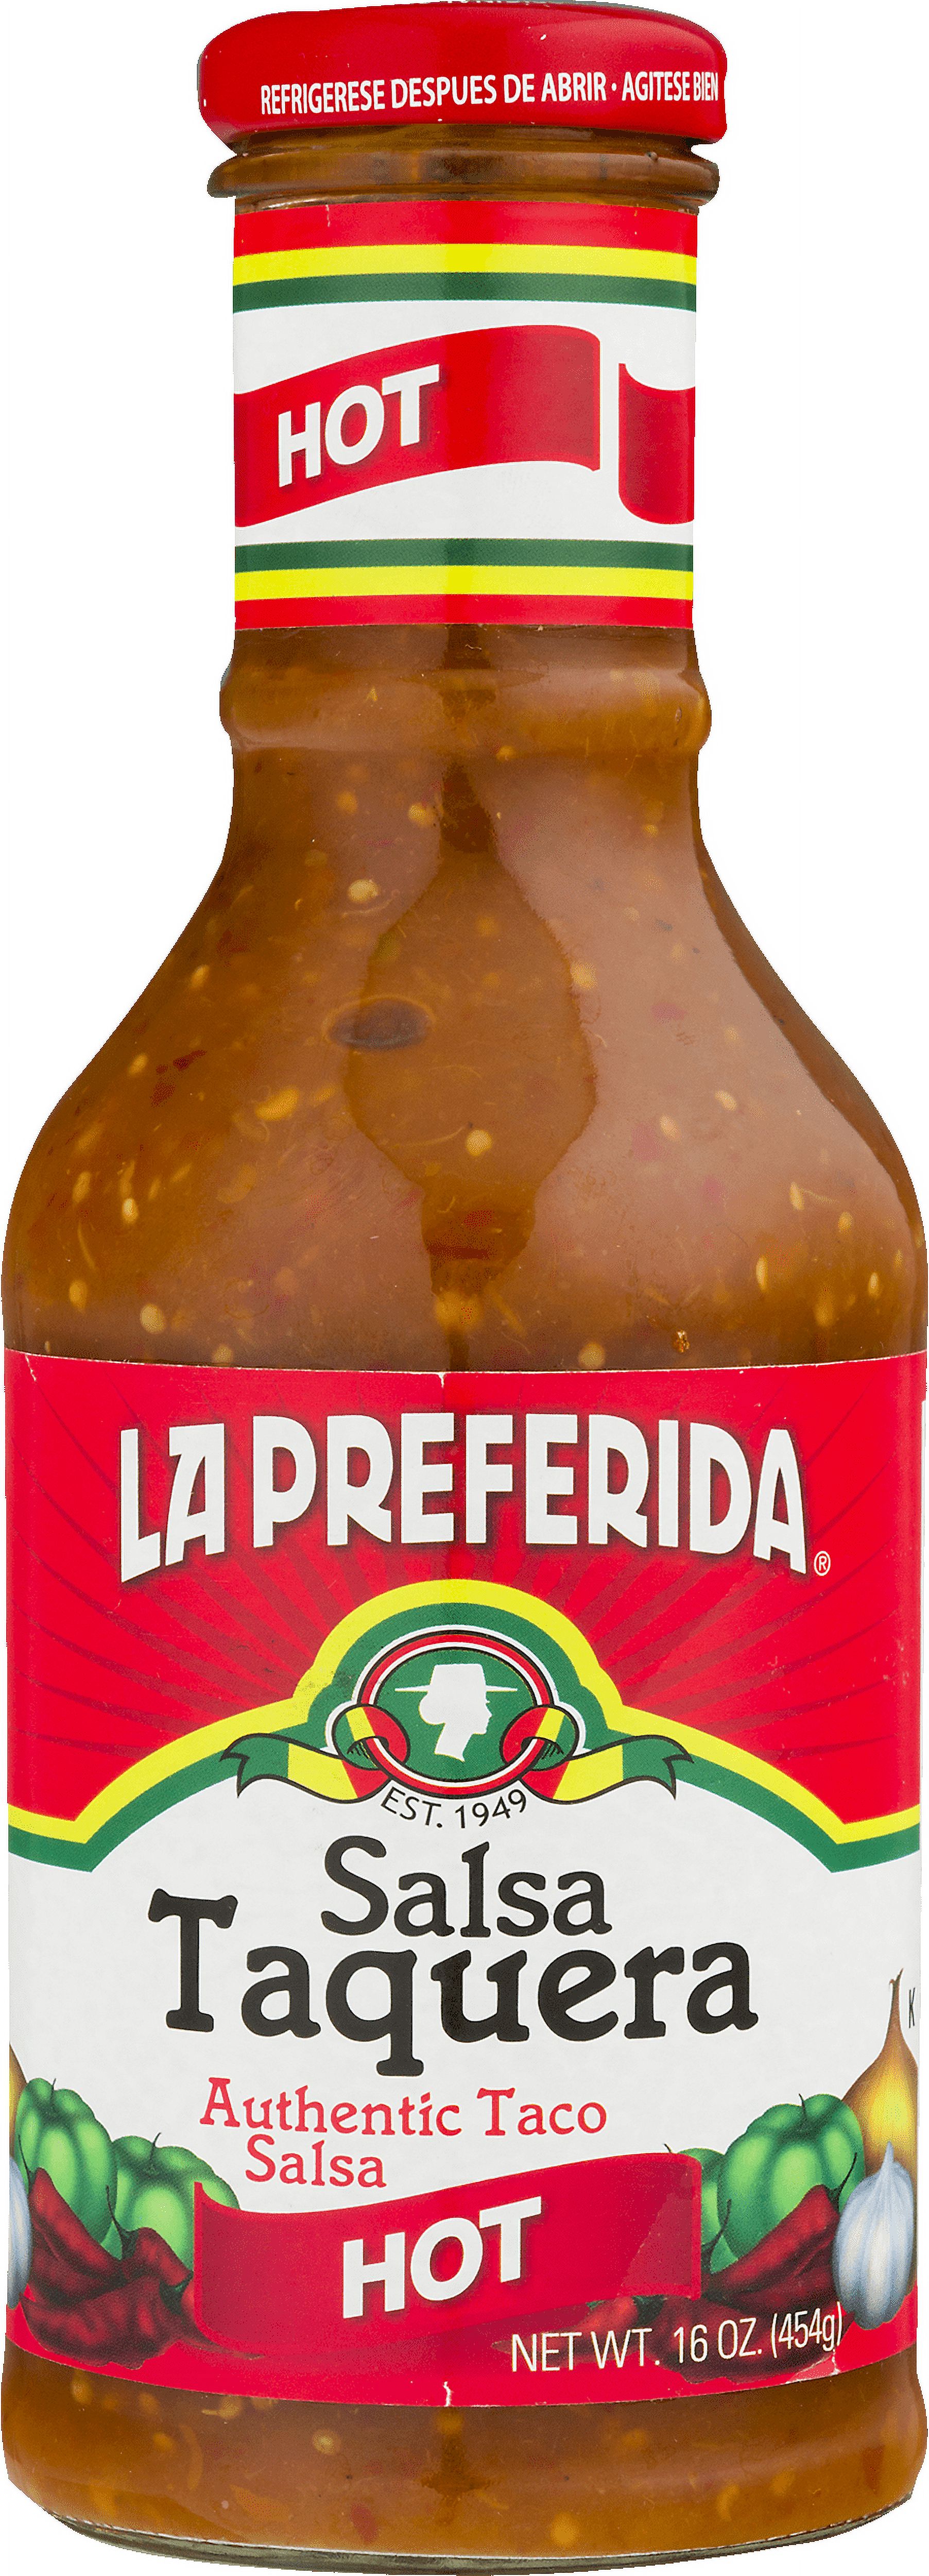 La Preferida Salsa Taquera - image 4 of 5